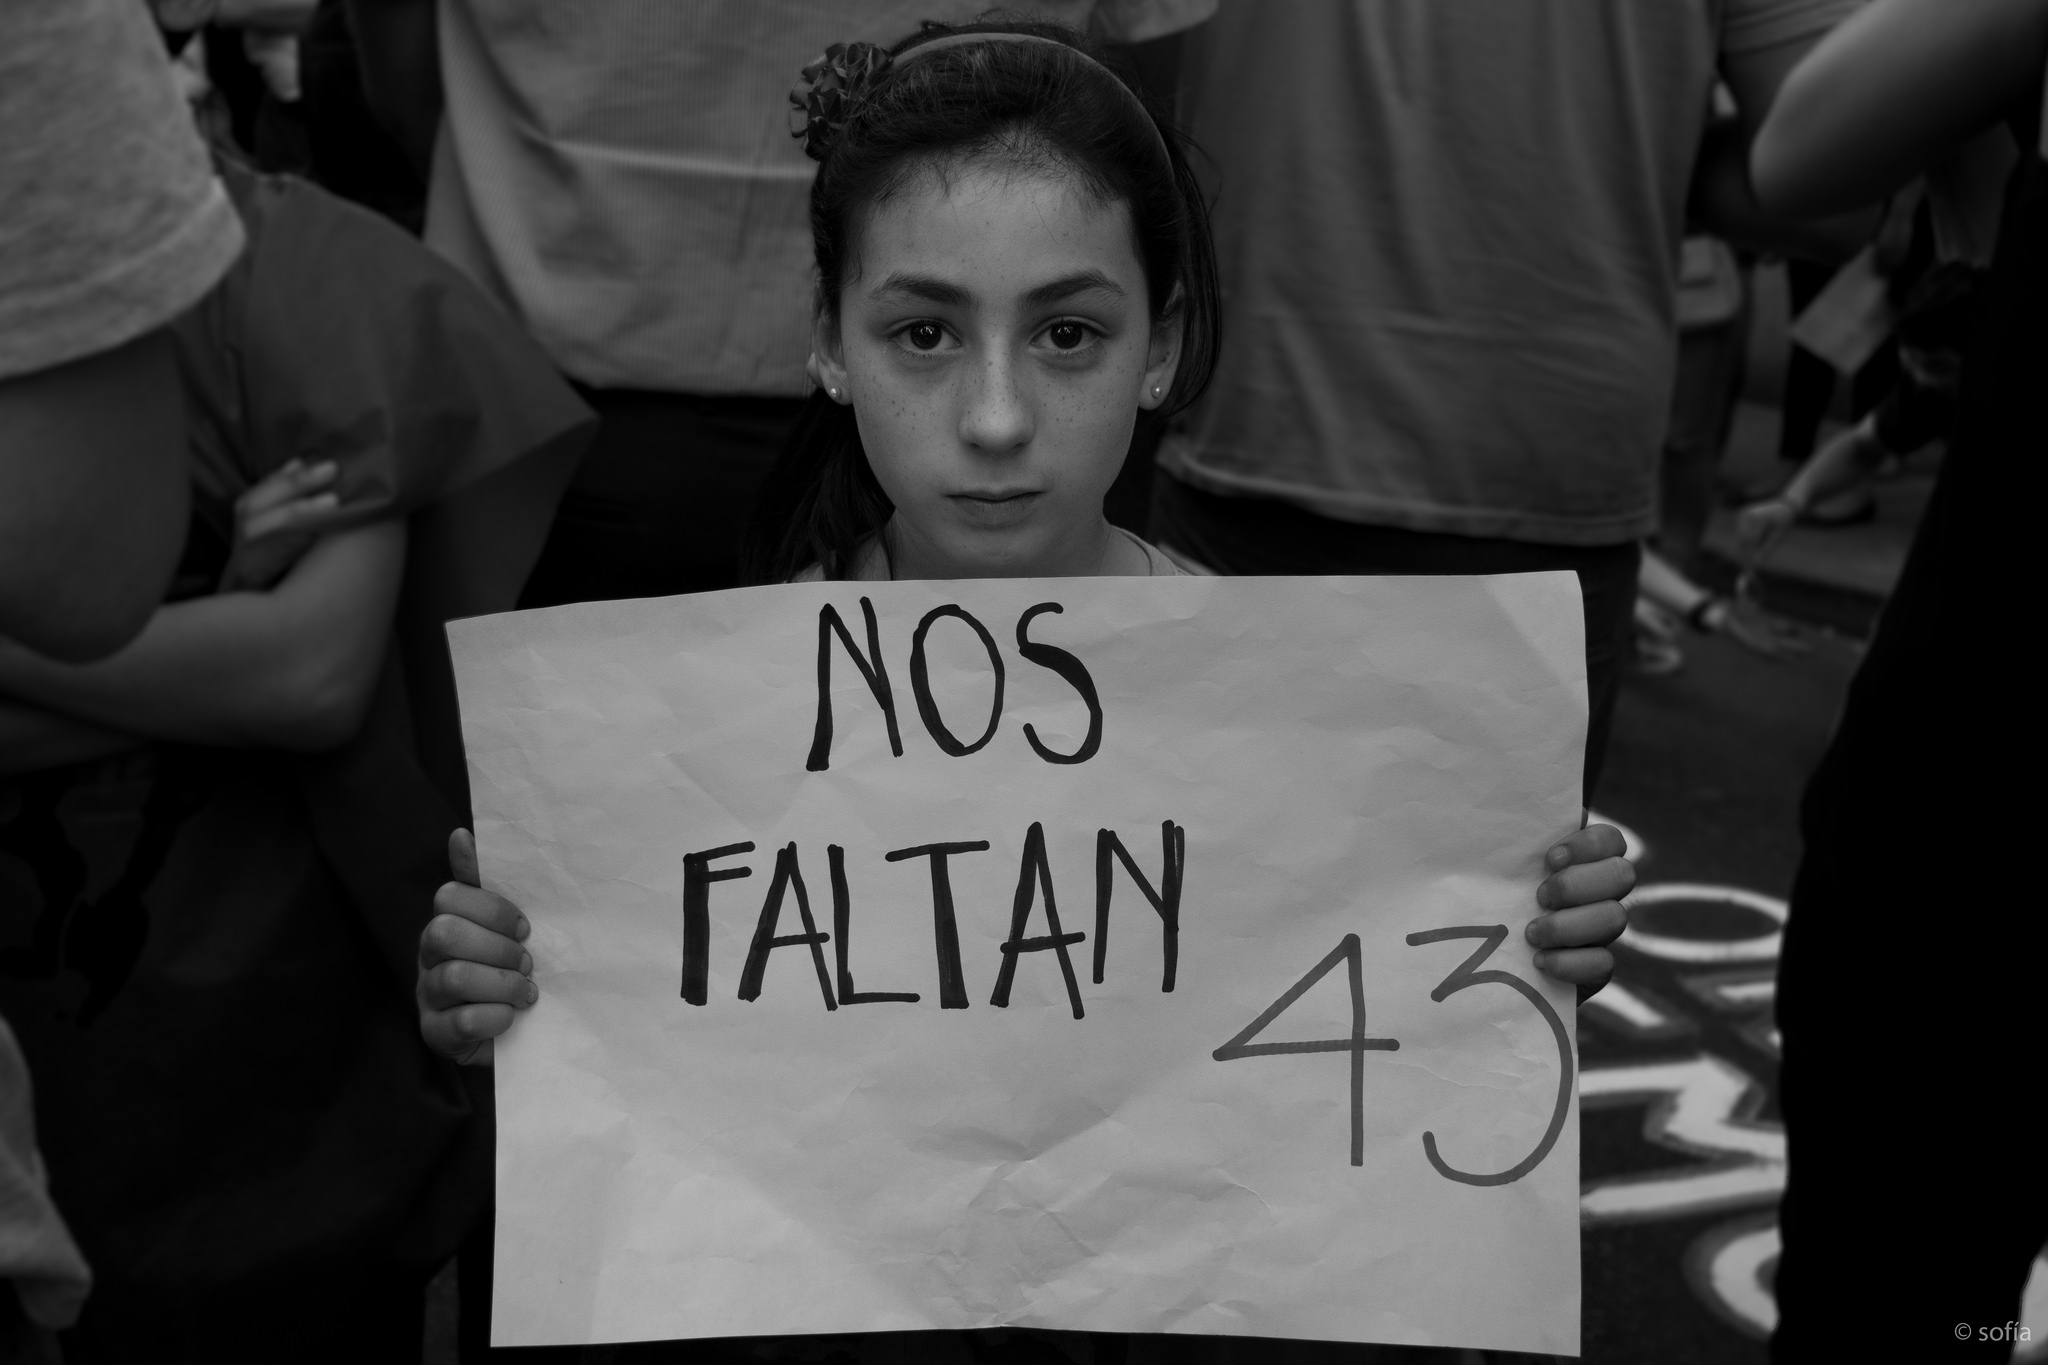 Marcha contra la detención y desaparición de los 43 normalistas de Ayotzinapa, en Montevideo, Uruguay. Noviembre 17, 2014. Foto tomada de la cuenta de Sofía González en Flickr bajo licencia Creative Commons.